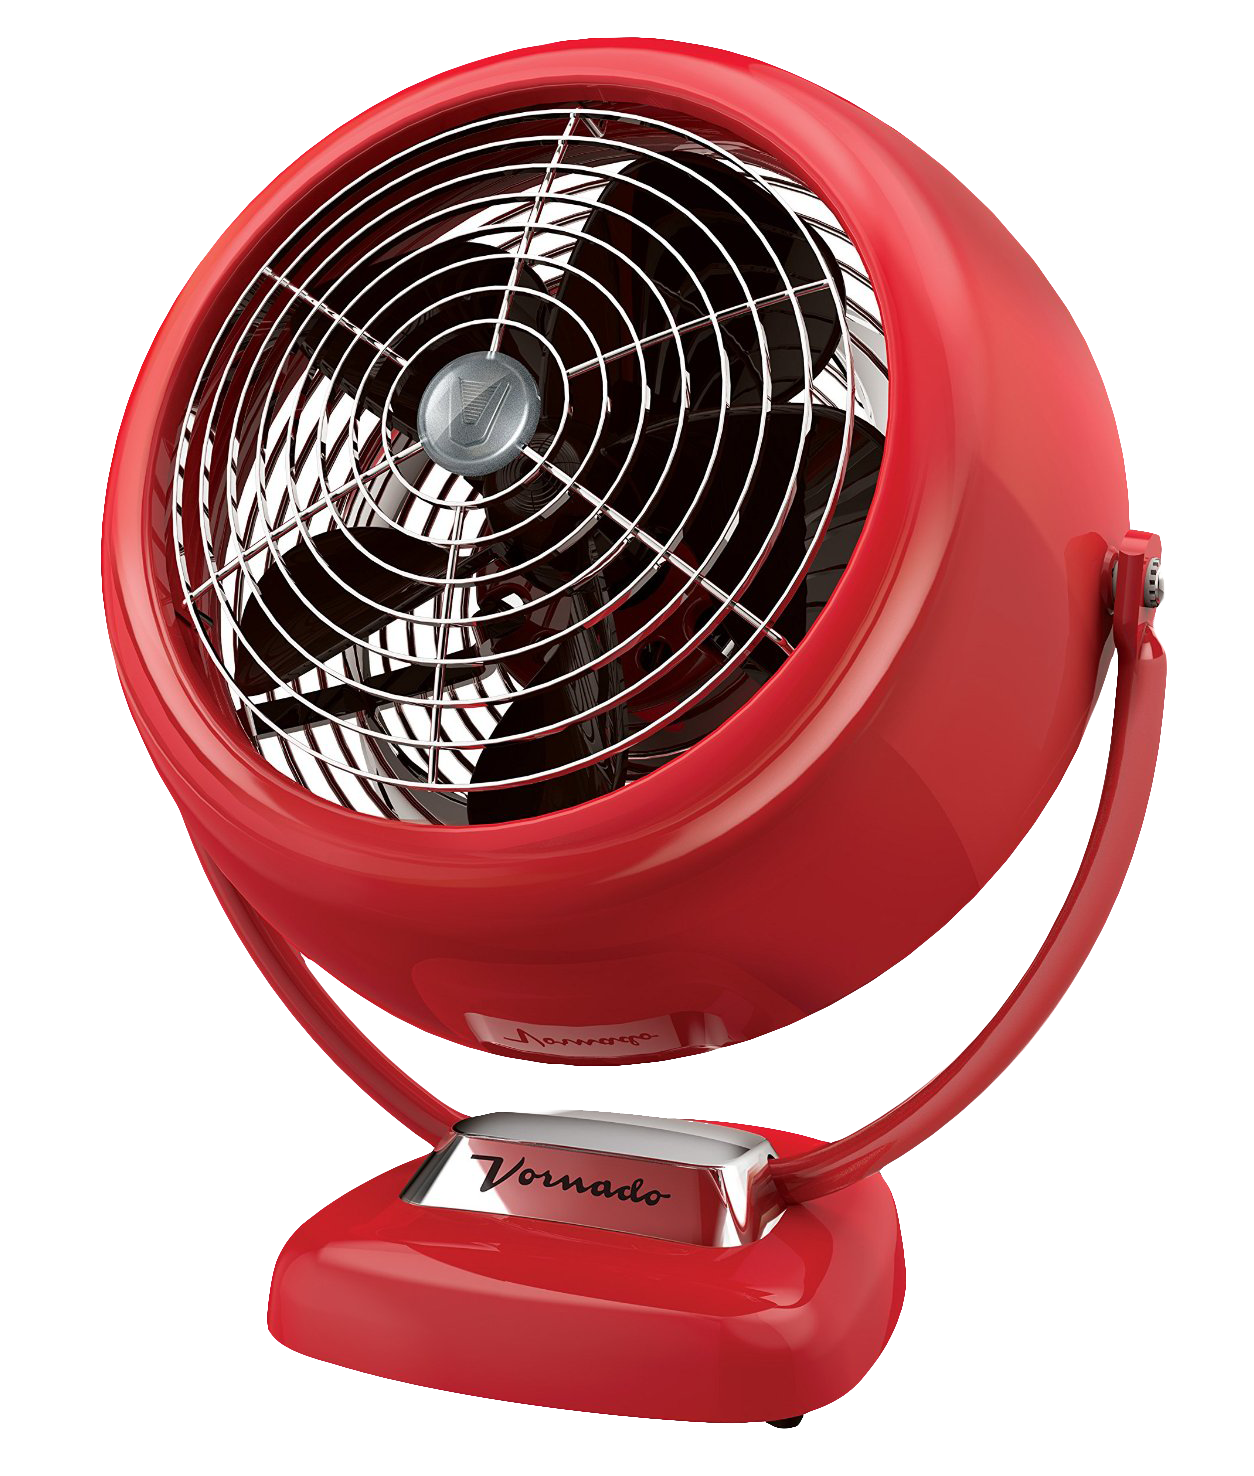 Red Vintage Style Vornado Fan PNG image